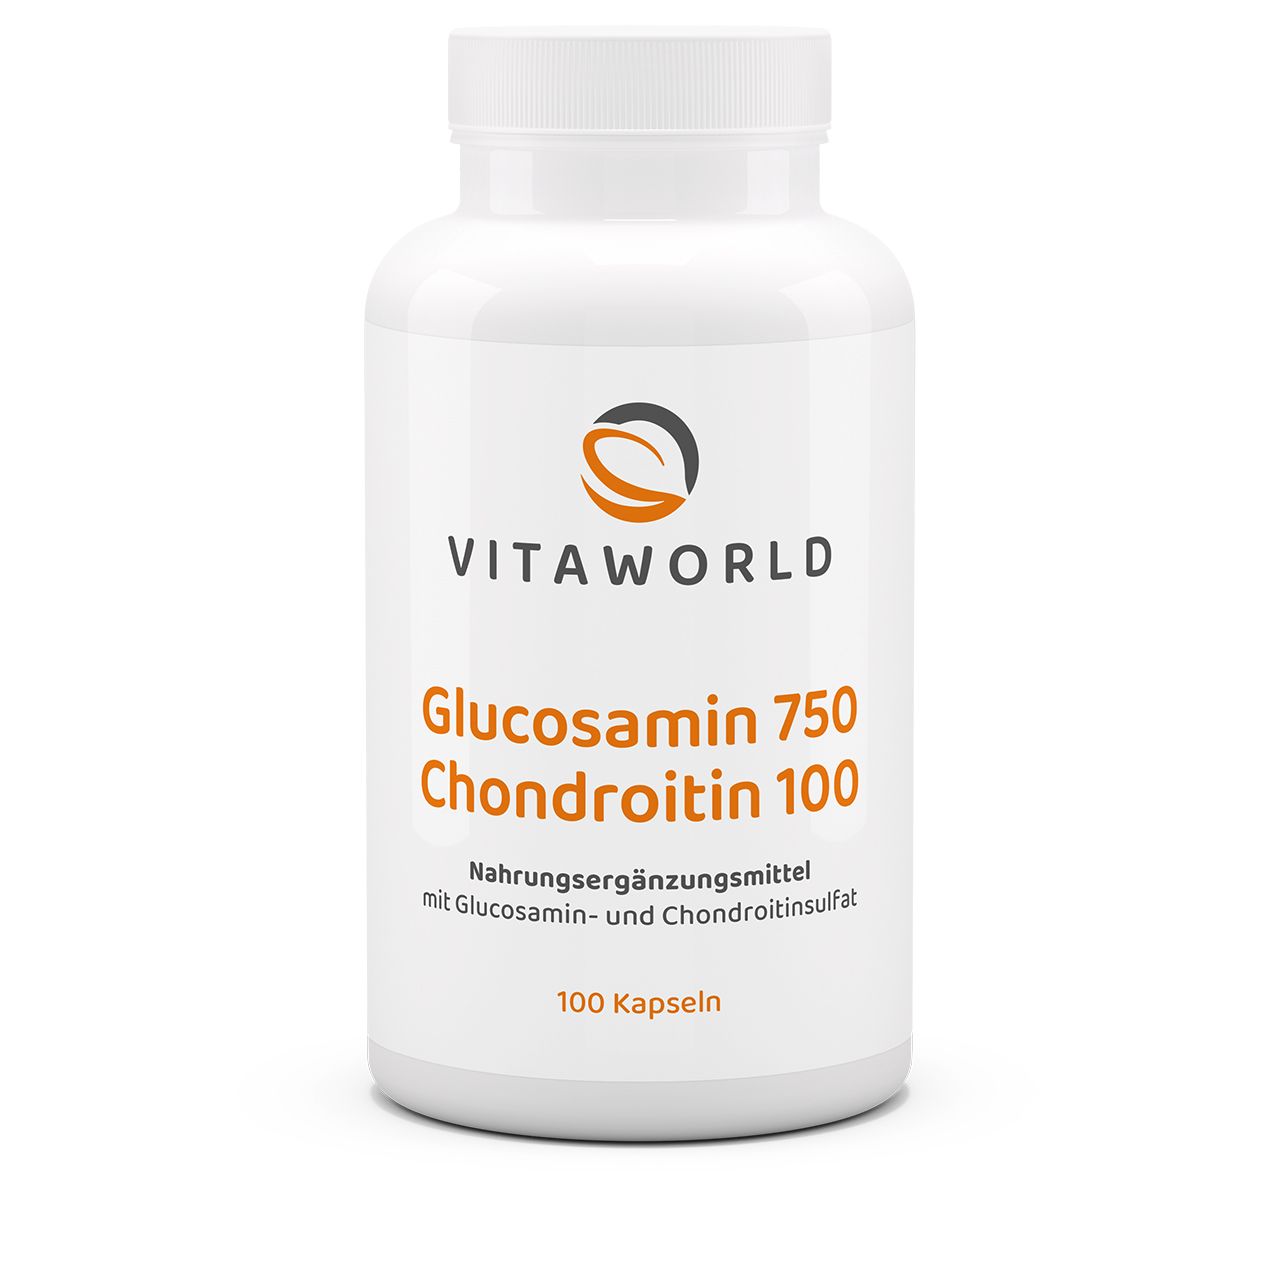 Vitaworld Glucosamin 750 + Chondroitin 100 | 100 Kapseln